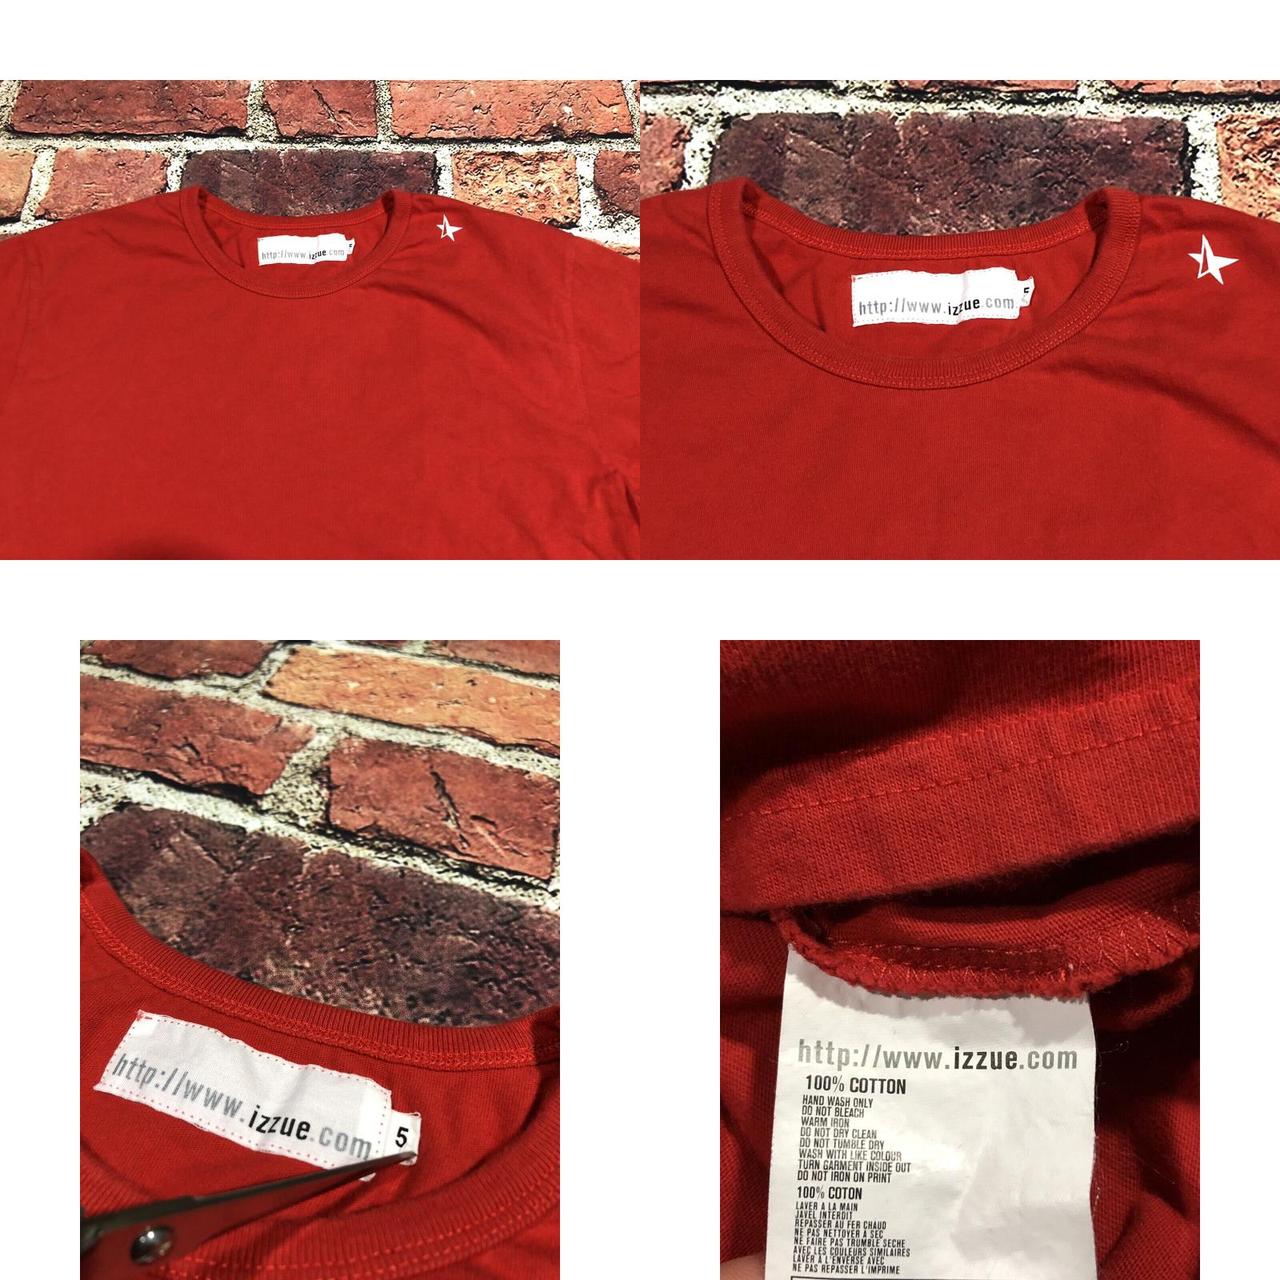 Izzue Men's Red T-shirt (4)